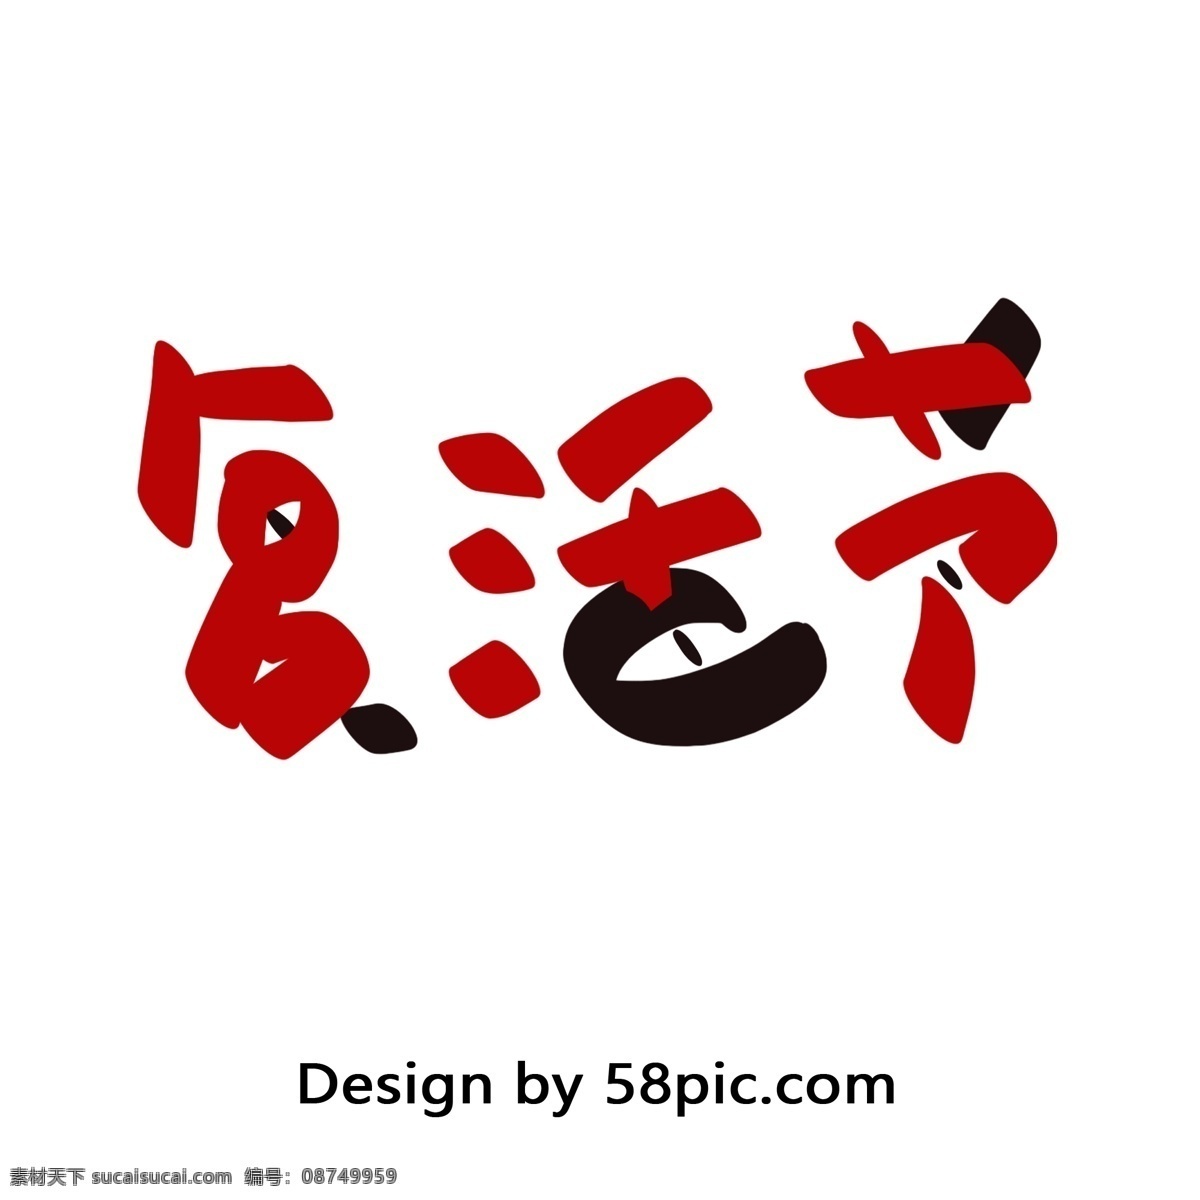 复活节 手绘 红 黑色 汉字 字体 艺术字 红色 简约 矢量 节日字体